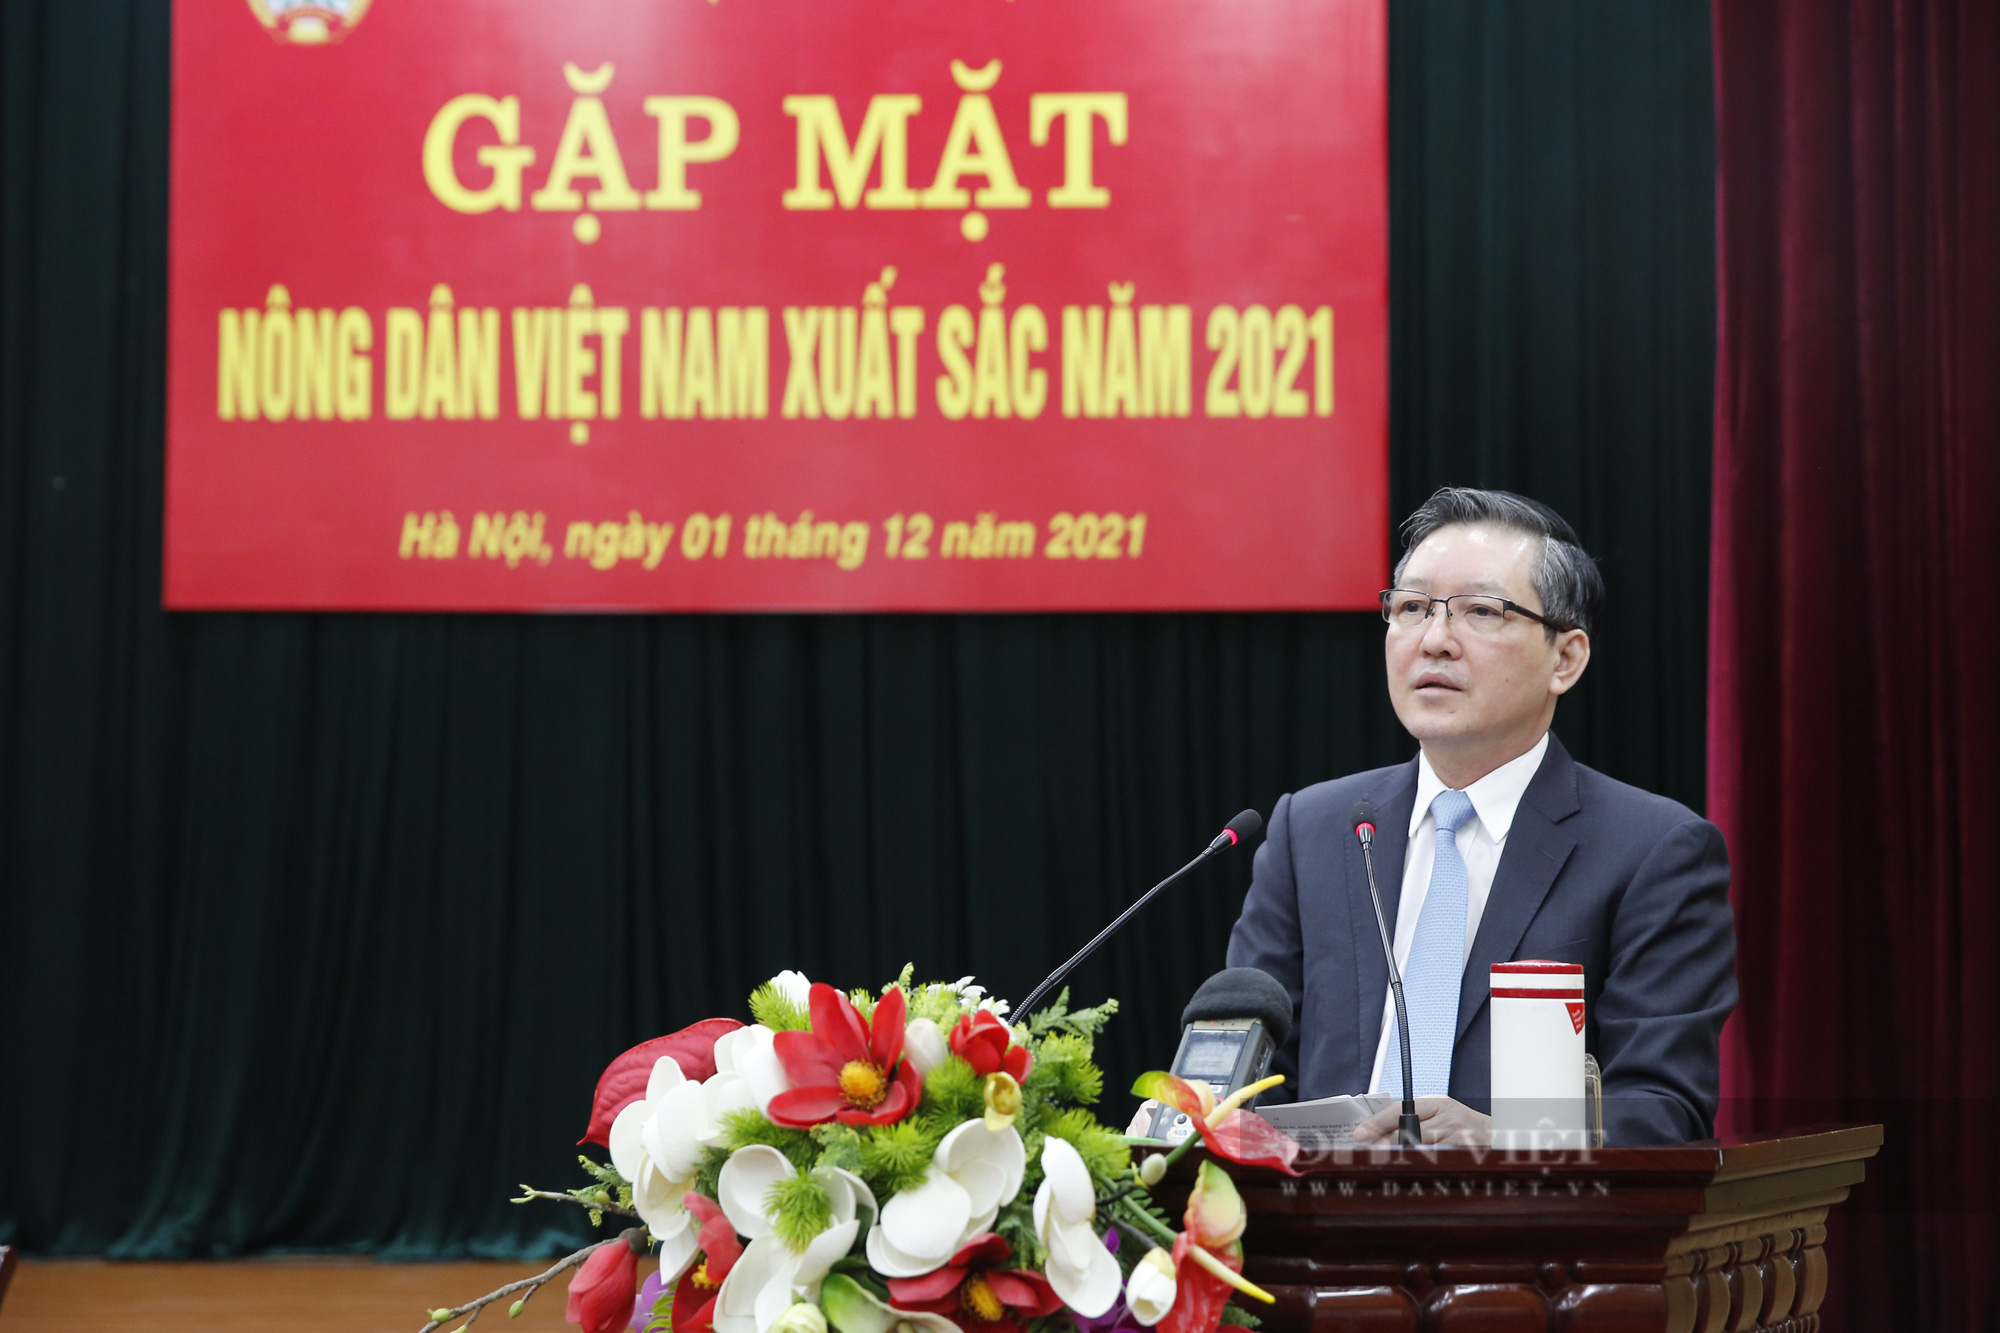 Ảnh: Thường trực Trung ương Hội Nông dân Việt Nam gặp mặt nông dân xuất sắc năm 2021 - Ảnh 2.